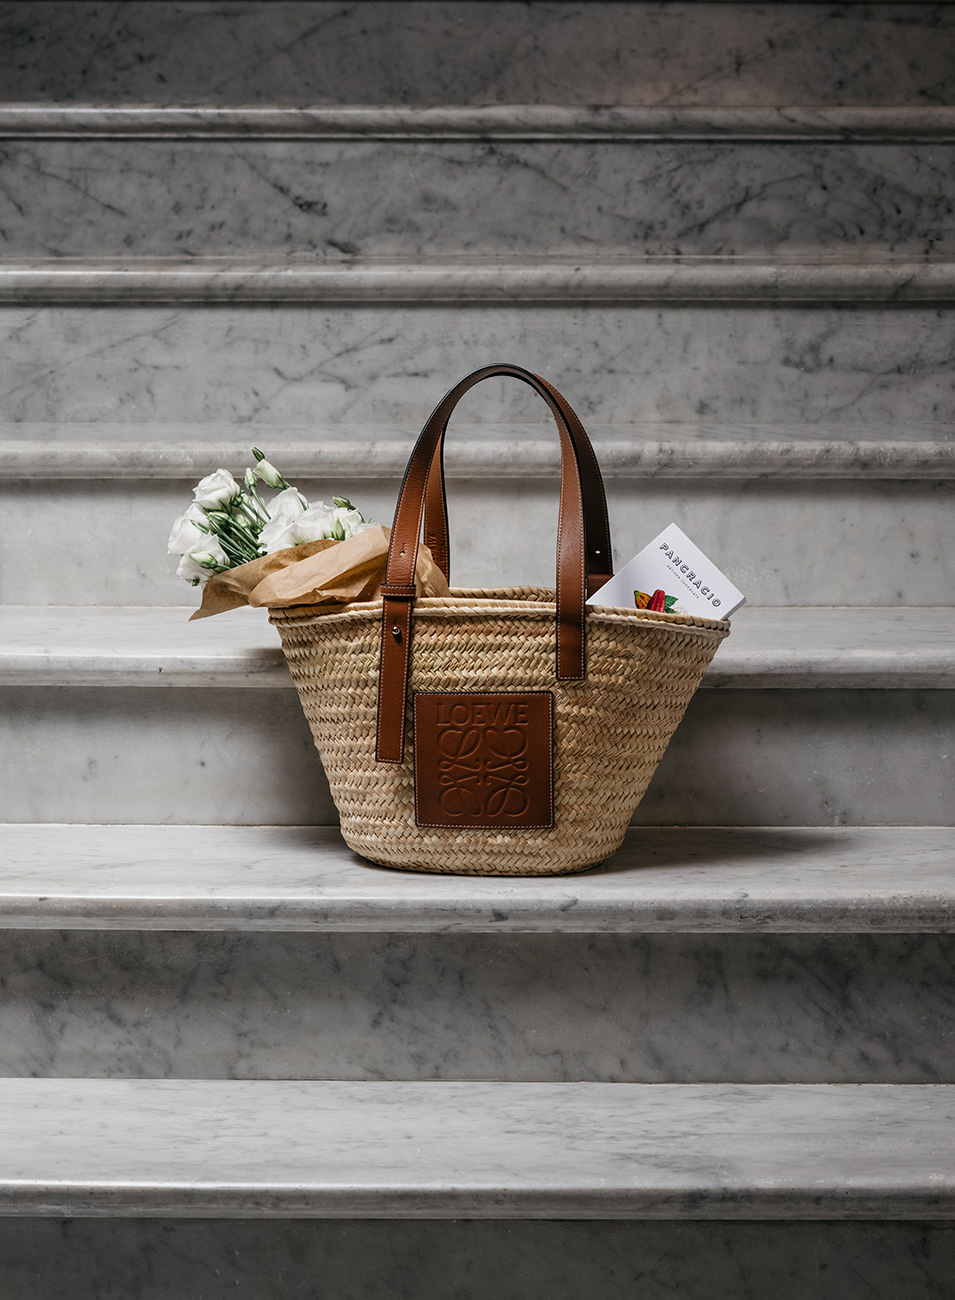 Un bolso de mimbre sobre unas escaleras de mármol blanco con flores blancas y una tableta de chocolates Pancracio